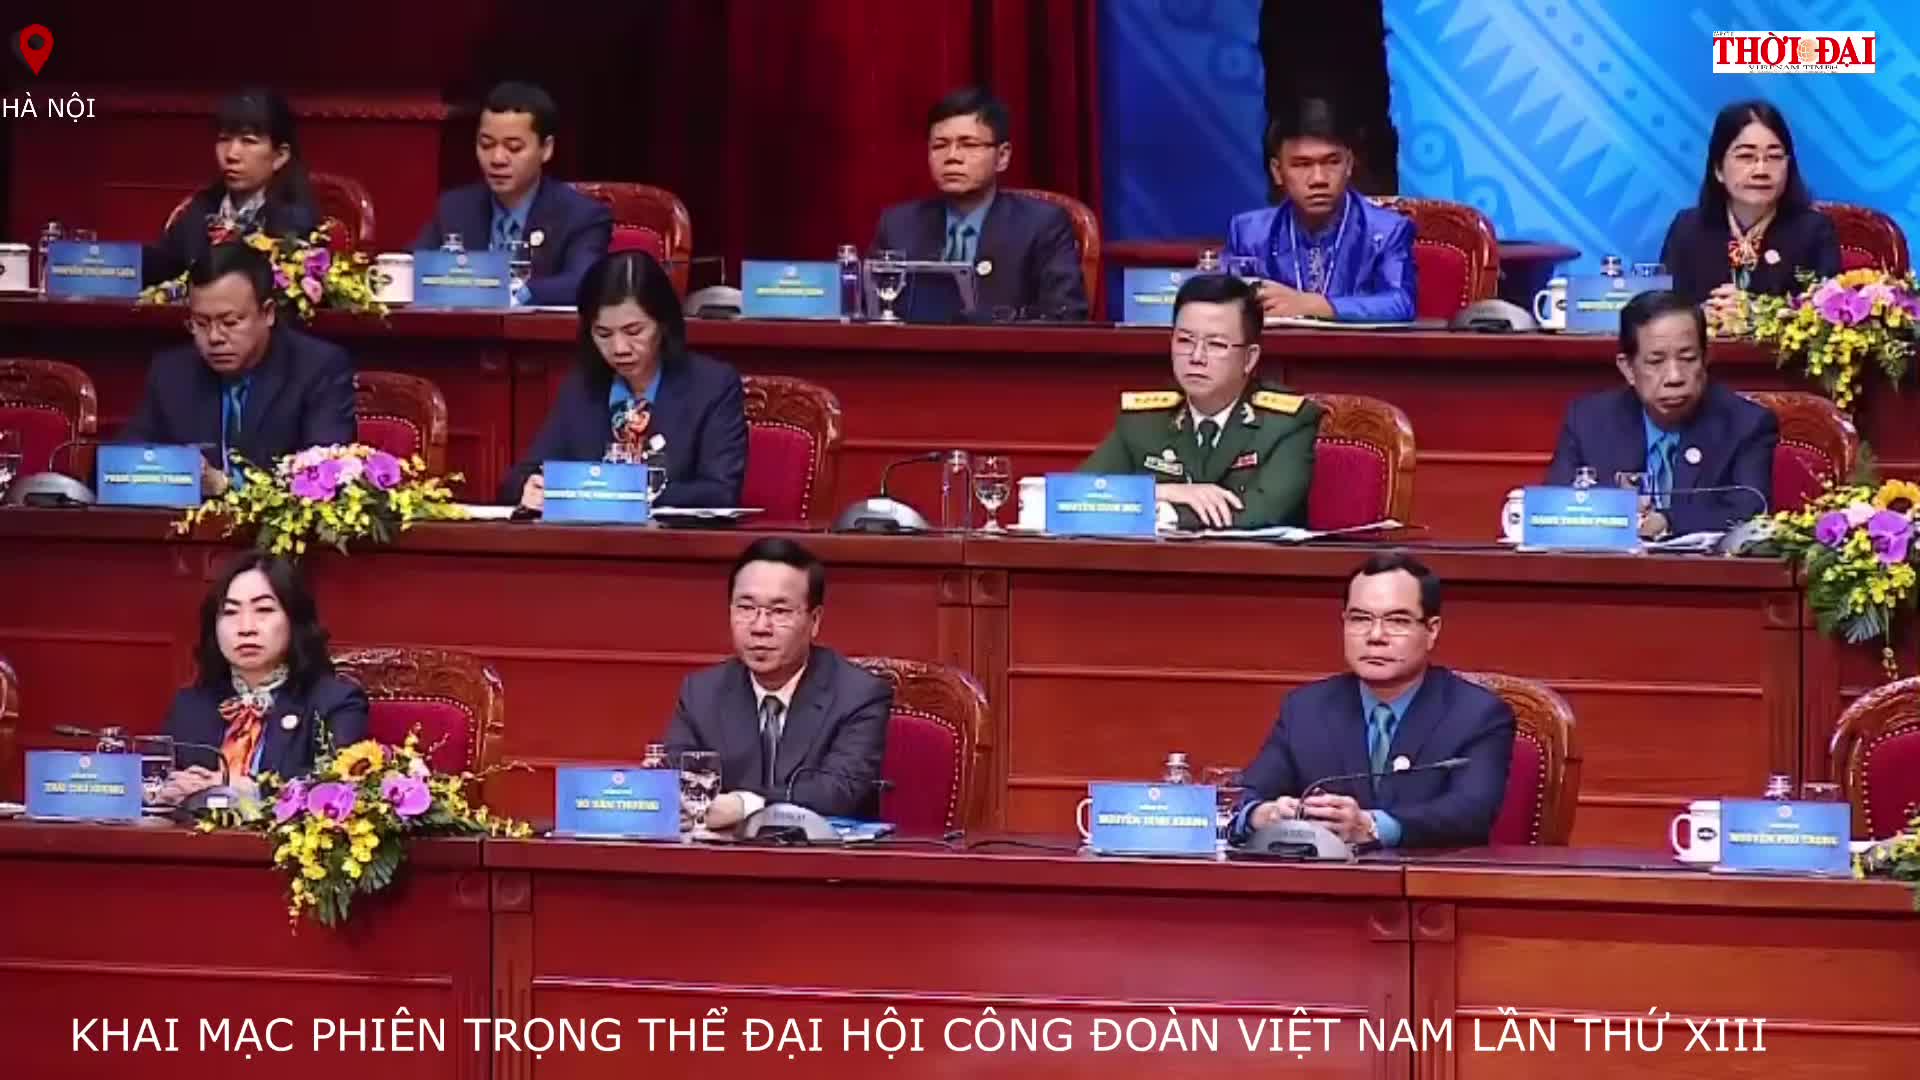 Khai mạc phiên trọng thể của Đại hội Công đoàn Việt Nam lần thứ XIII.